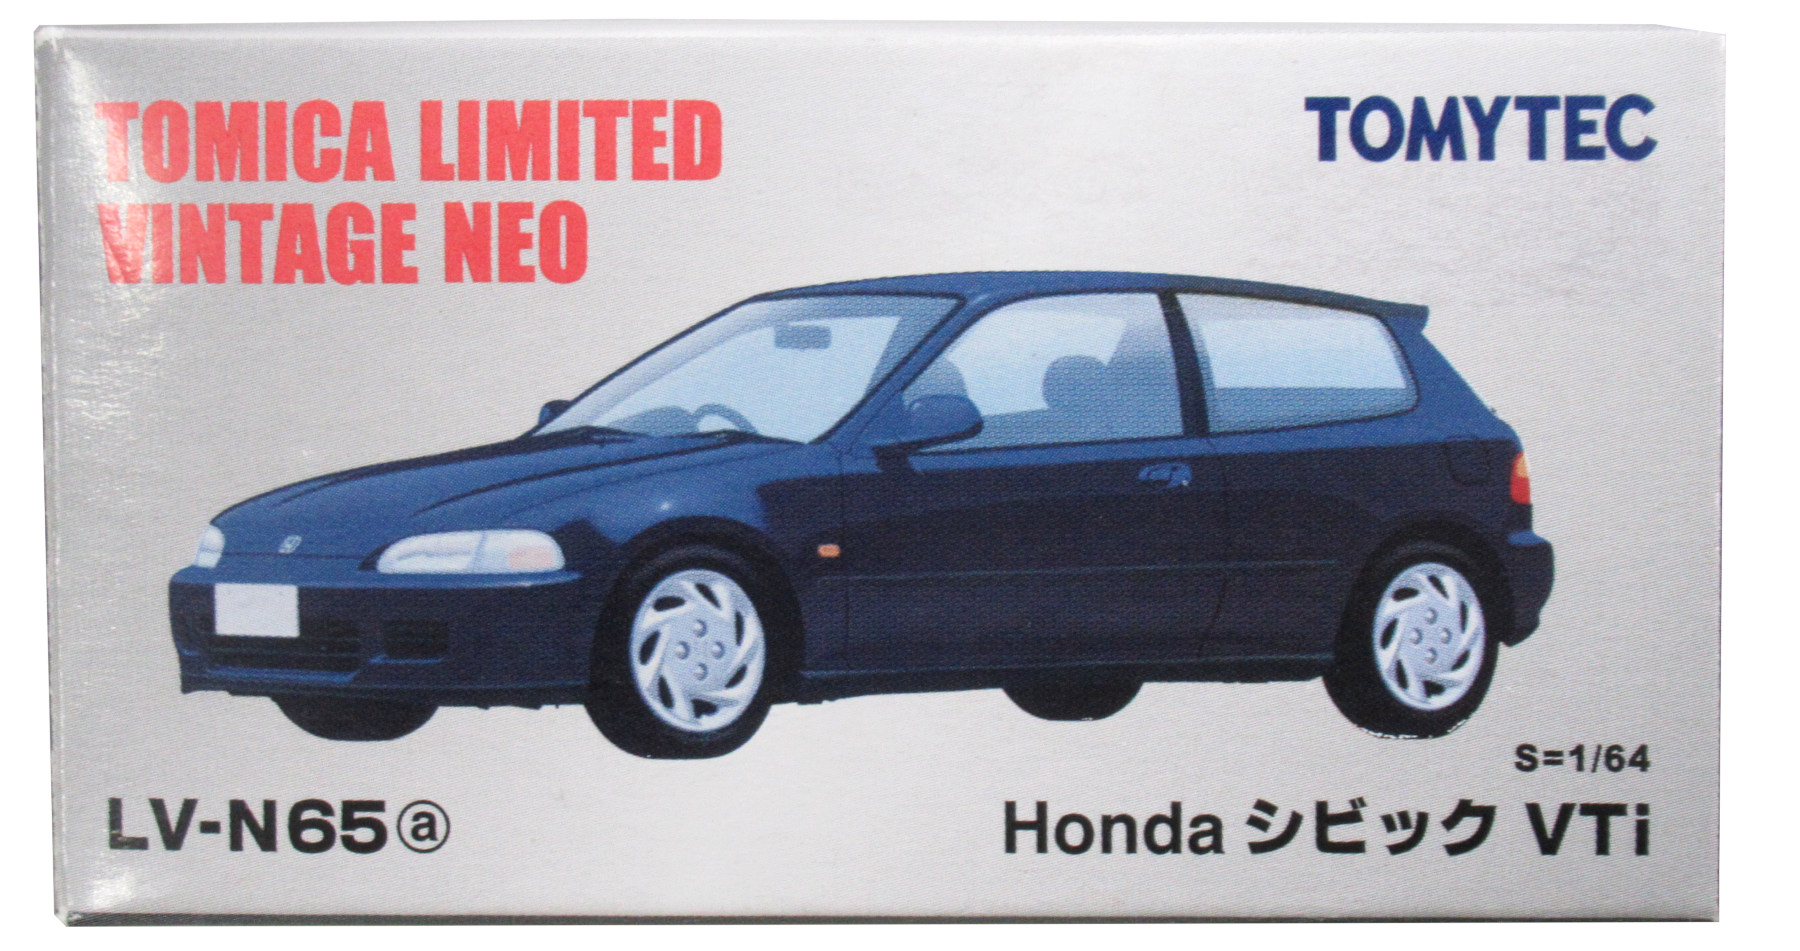 公式]TOY(トミカリミテッドヴィンテージNEO LV-N65a Honda シビックVTi 